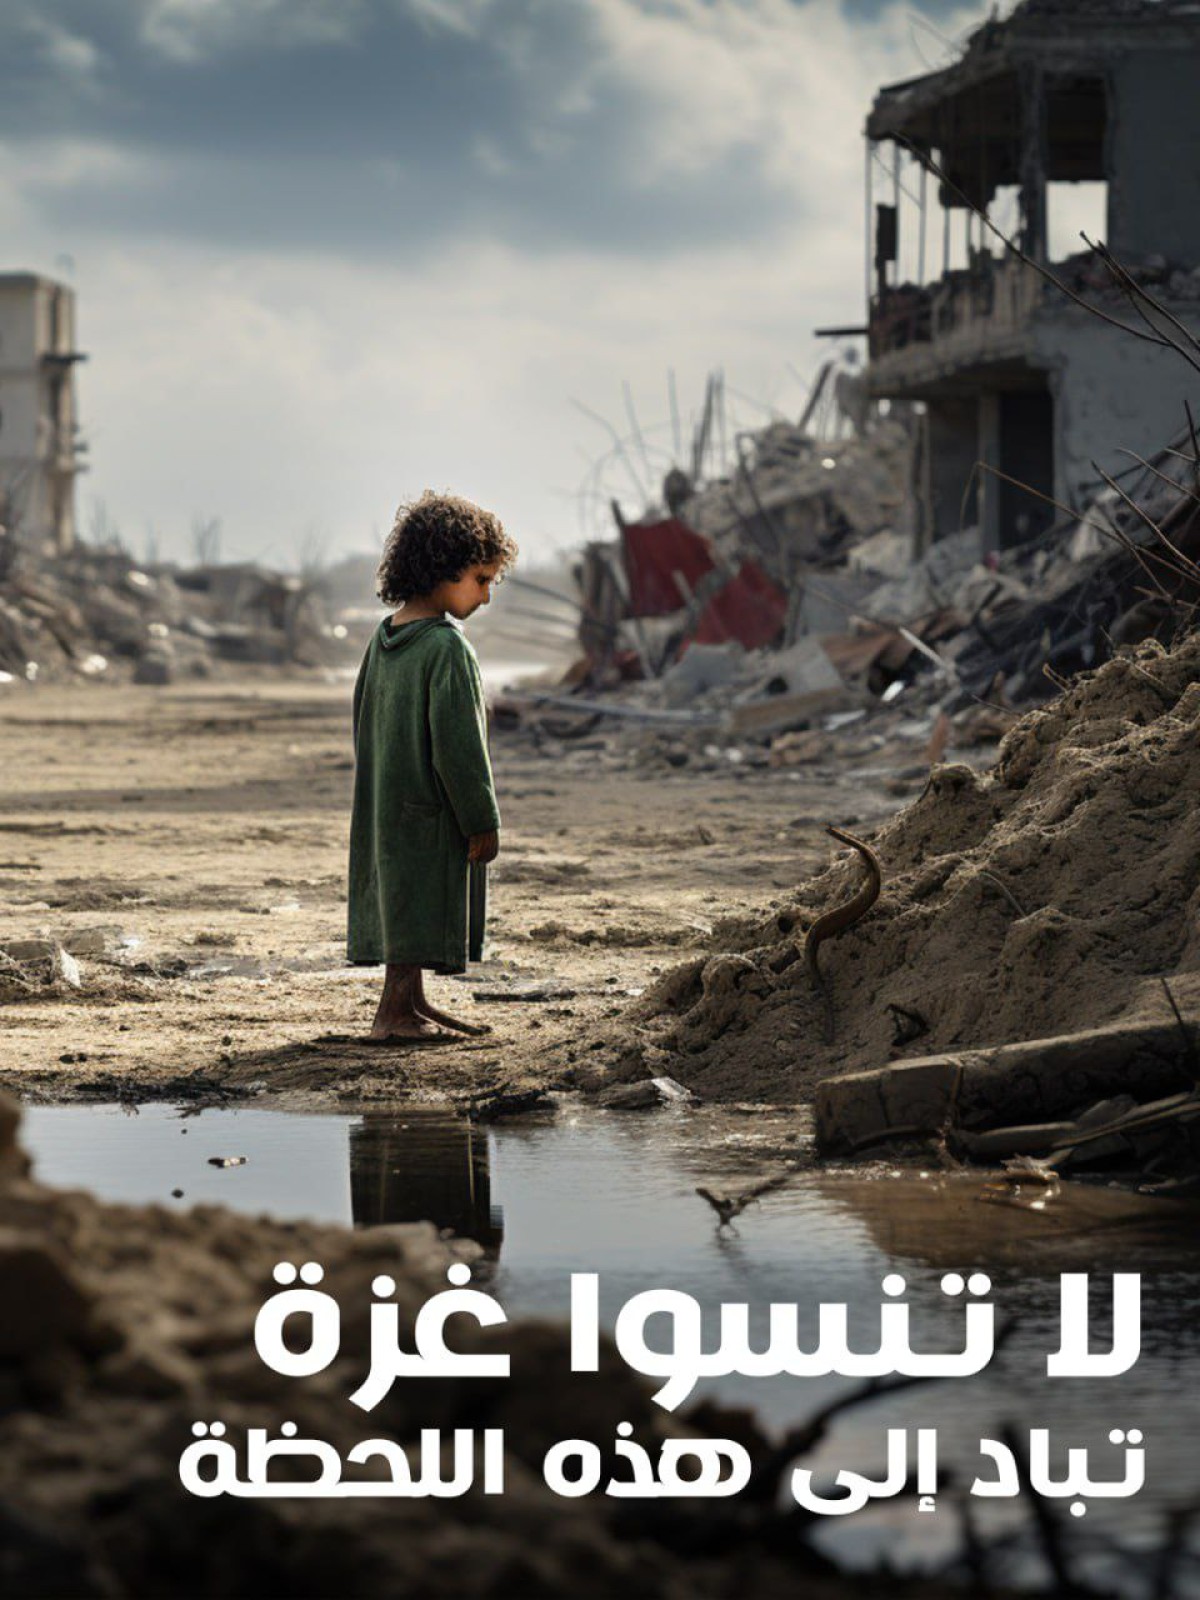 لاتنسوا غزة تباد إلى هذه اللحظة